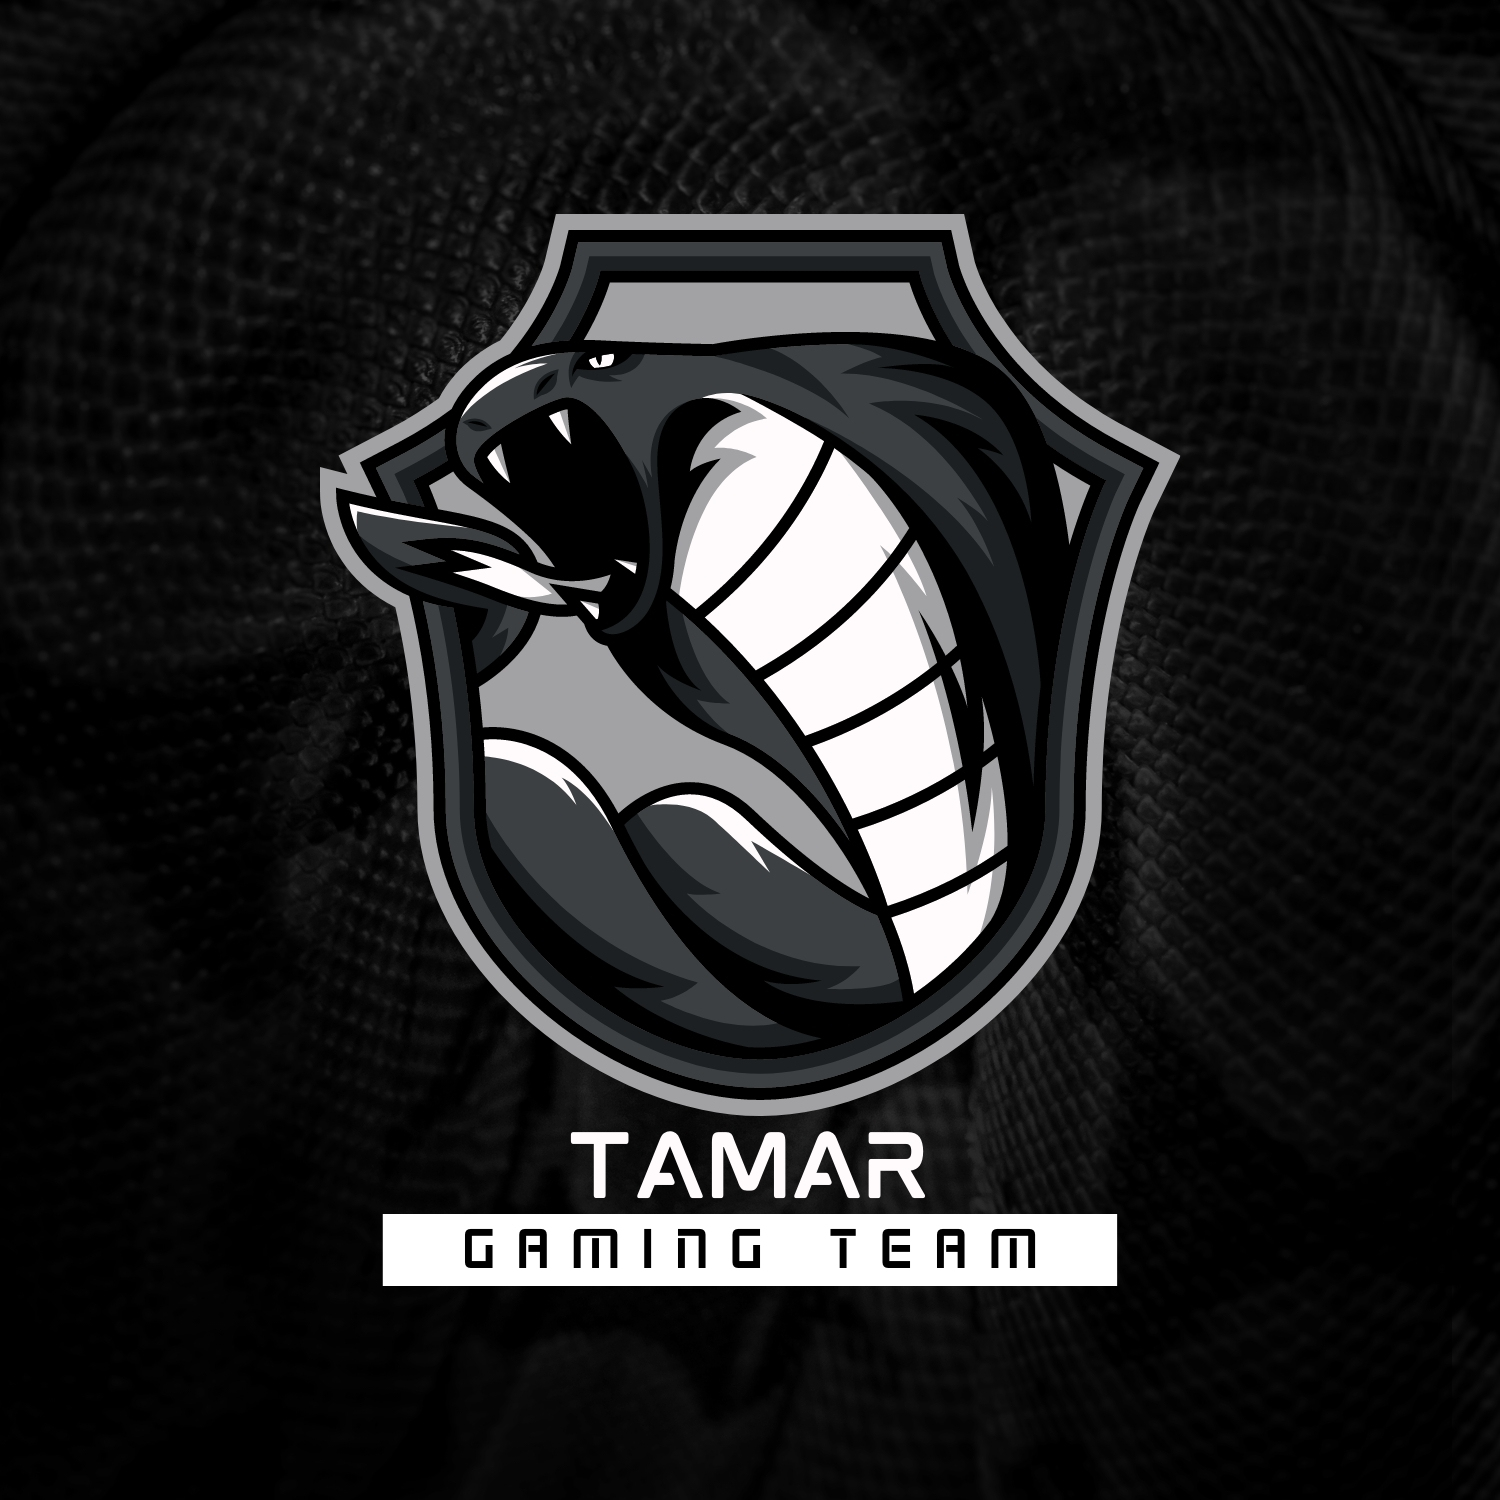 Black king cobra gaming logo